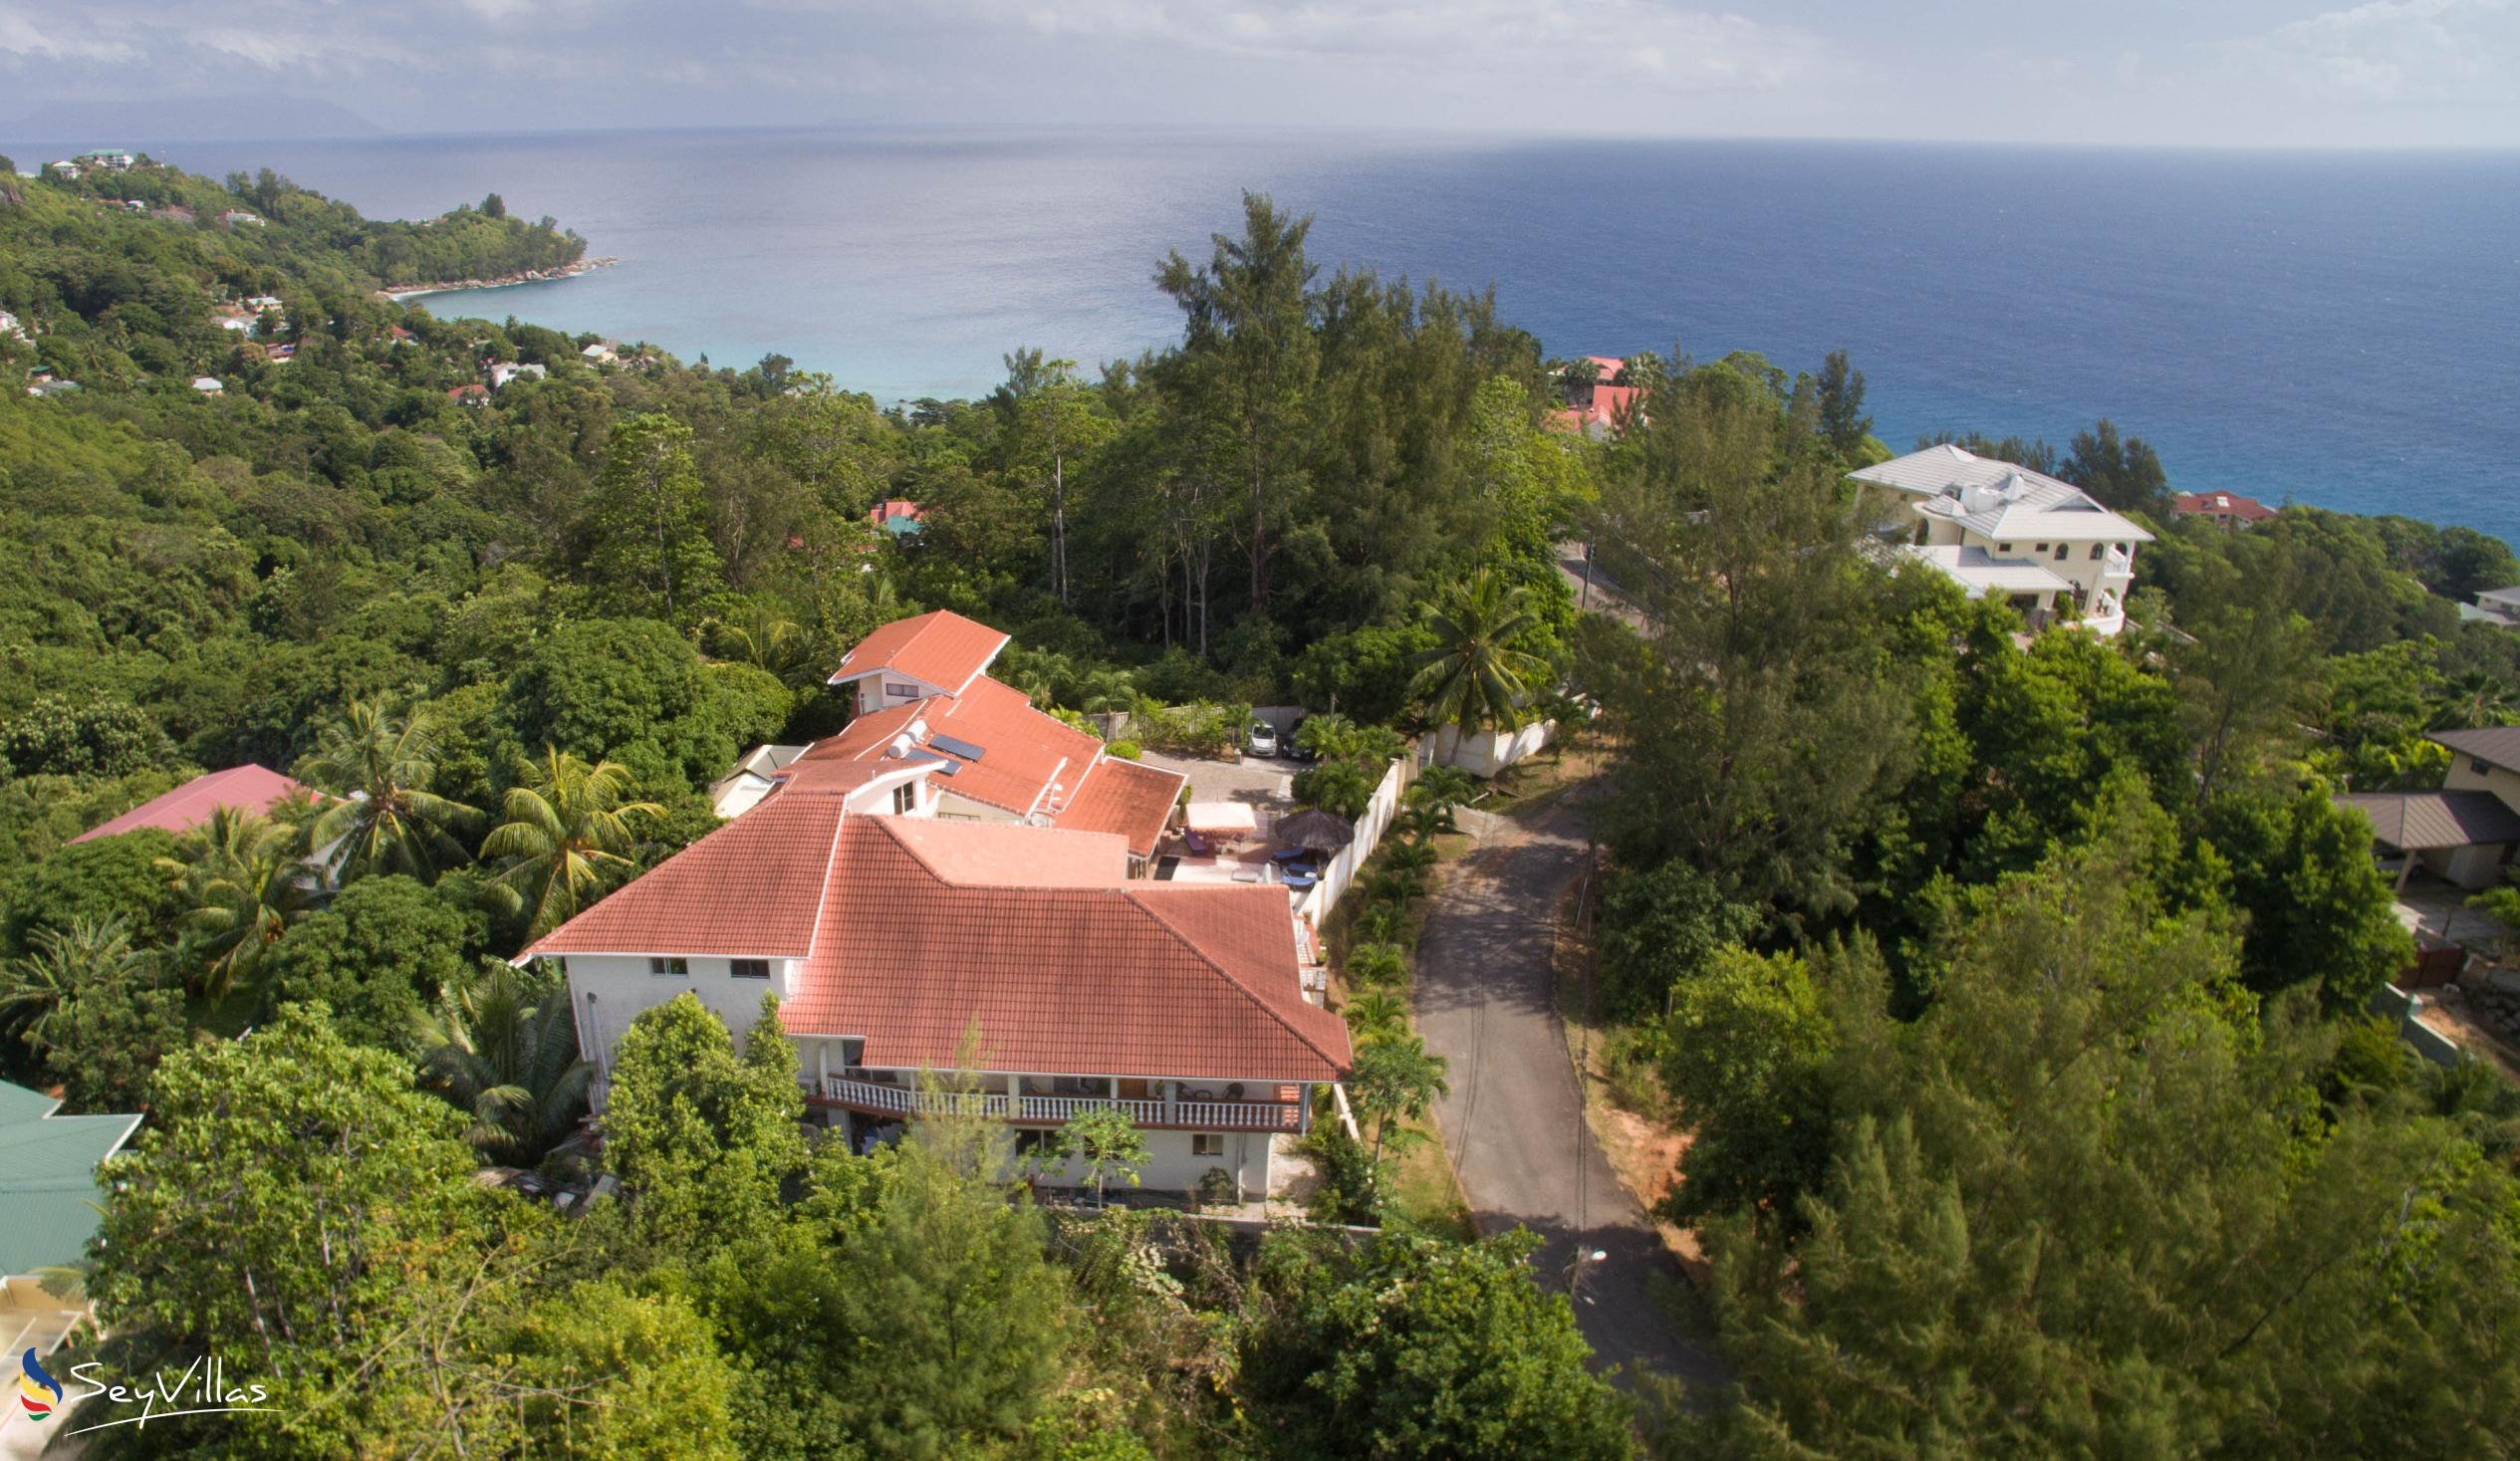 Foto 3: Carana Hilltop Villa - Extérieur - Mahé (Seychelles)